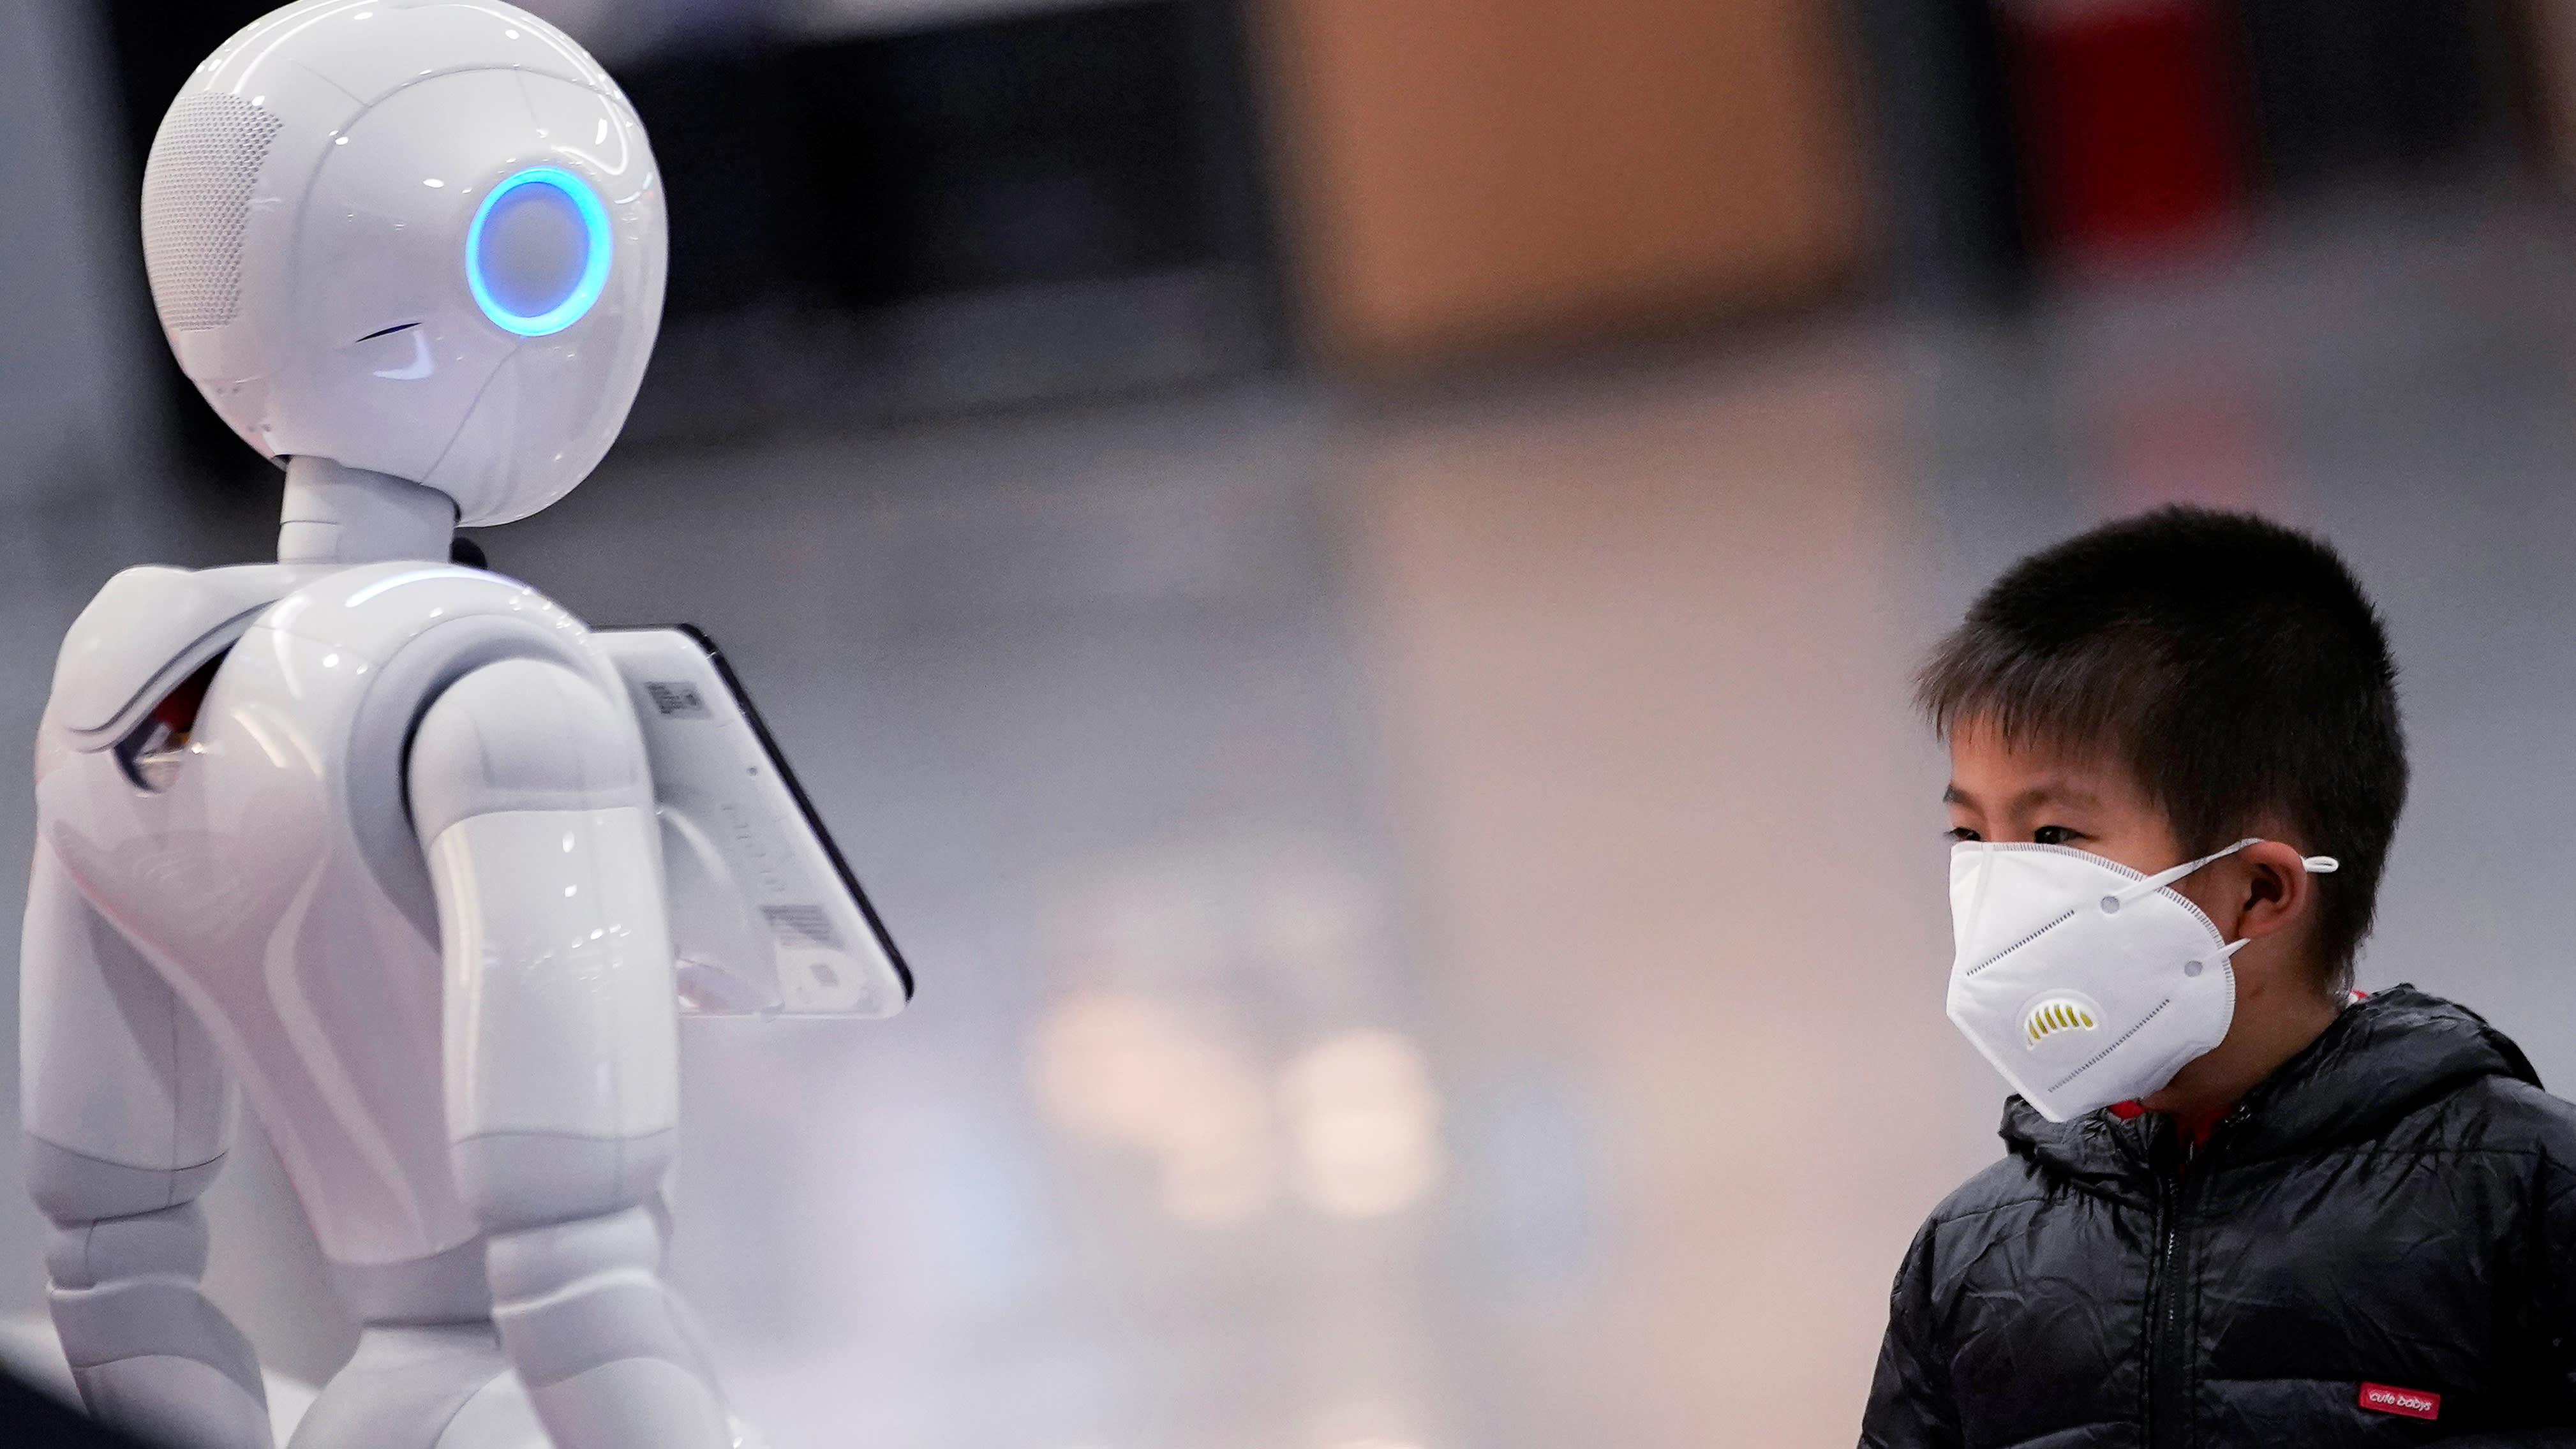 बोलने वाले एआइ रोबोट को कोविड-19 के लिए लोगों की मदद करने का समाधान माना जा रहा है